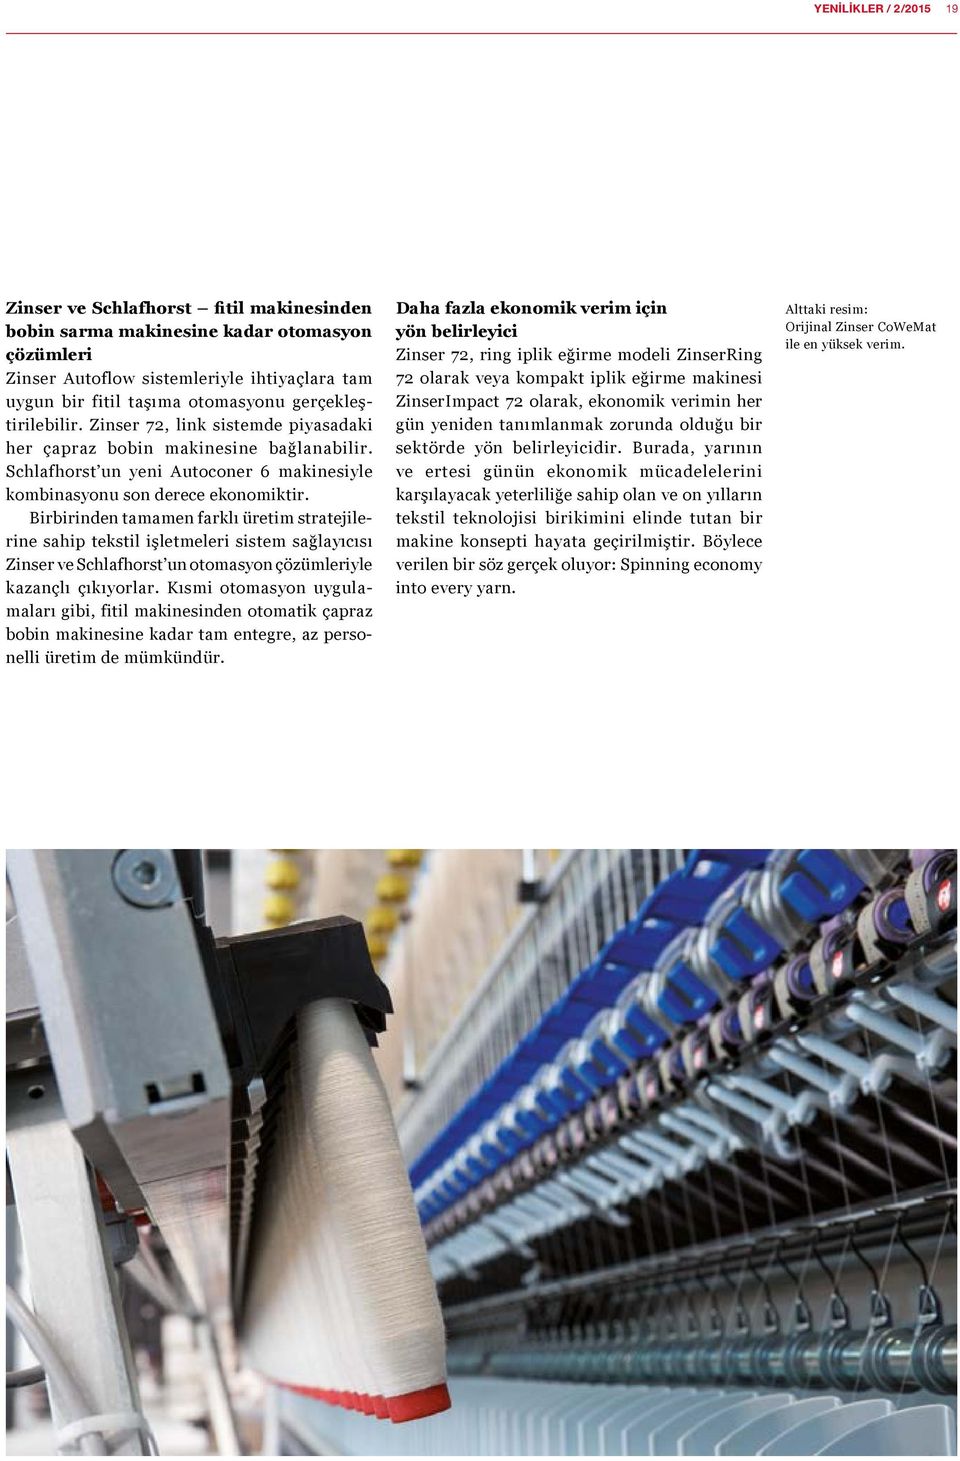 Birbirinden tamamen farklı üretim stratejilerine sahip tekstil işletmeleri sistem sağlayıcısı Zinser ve Schlafhorst un otomasyon çözümleriyle kazançlı çıkıyorlar.